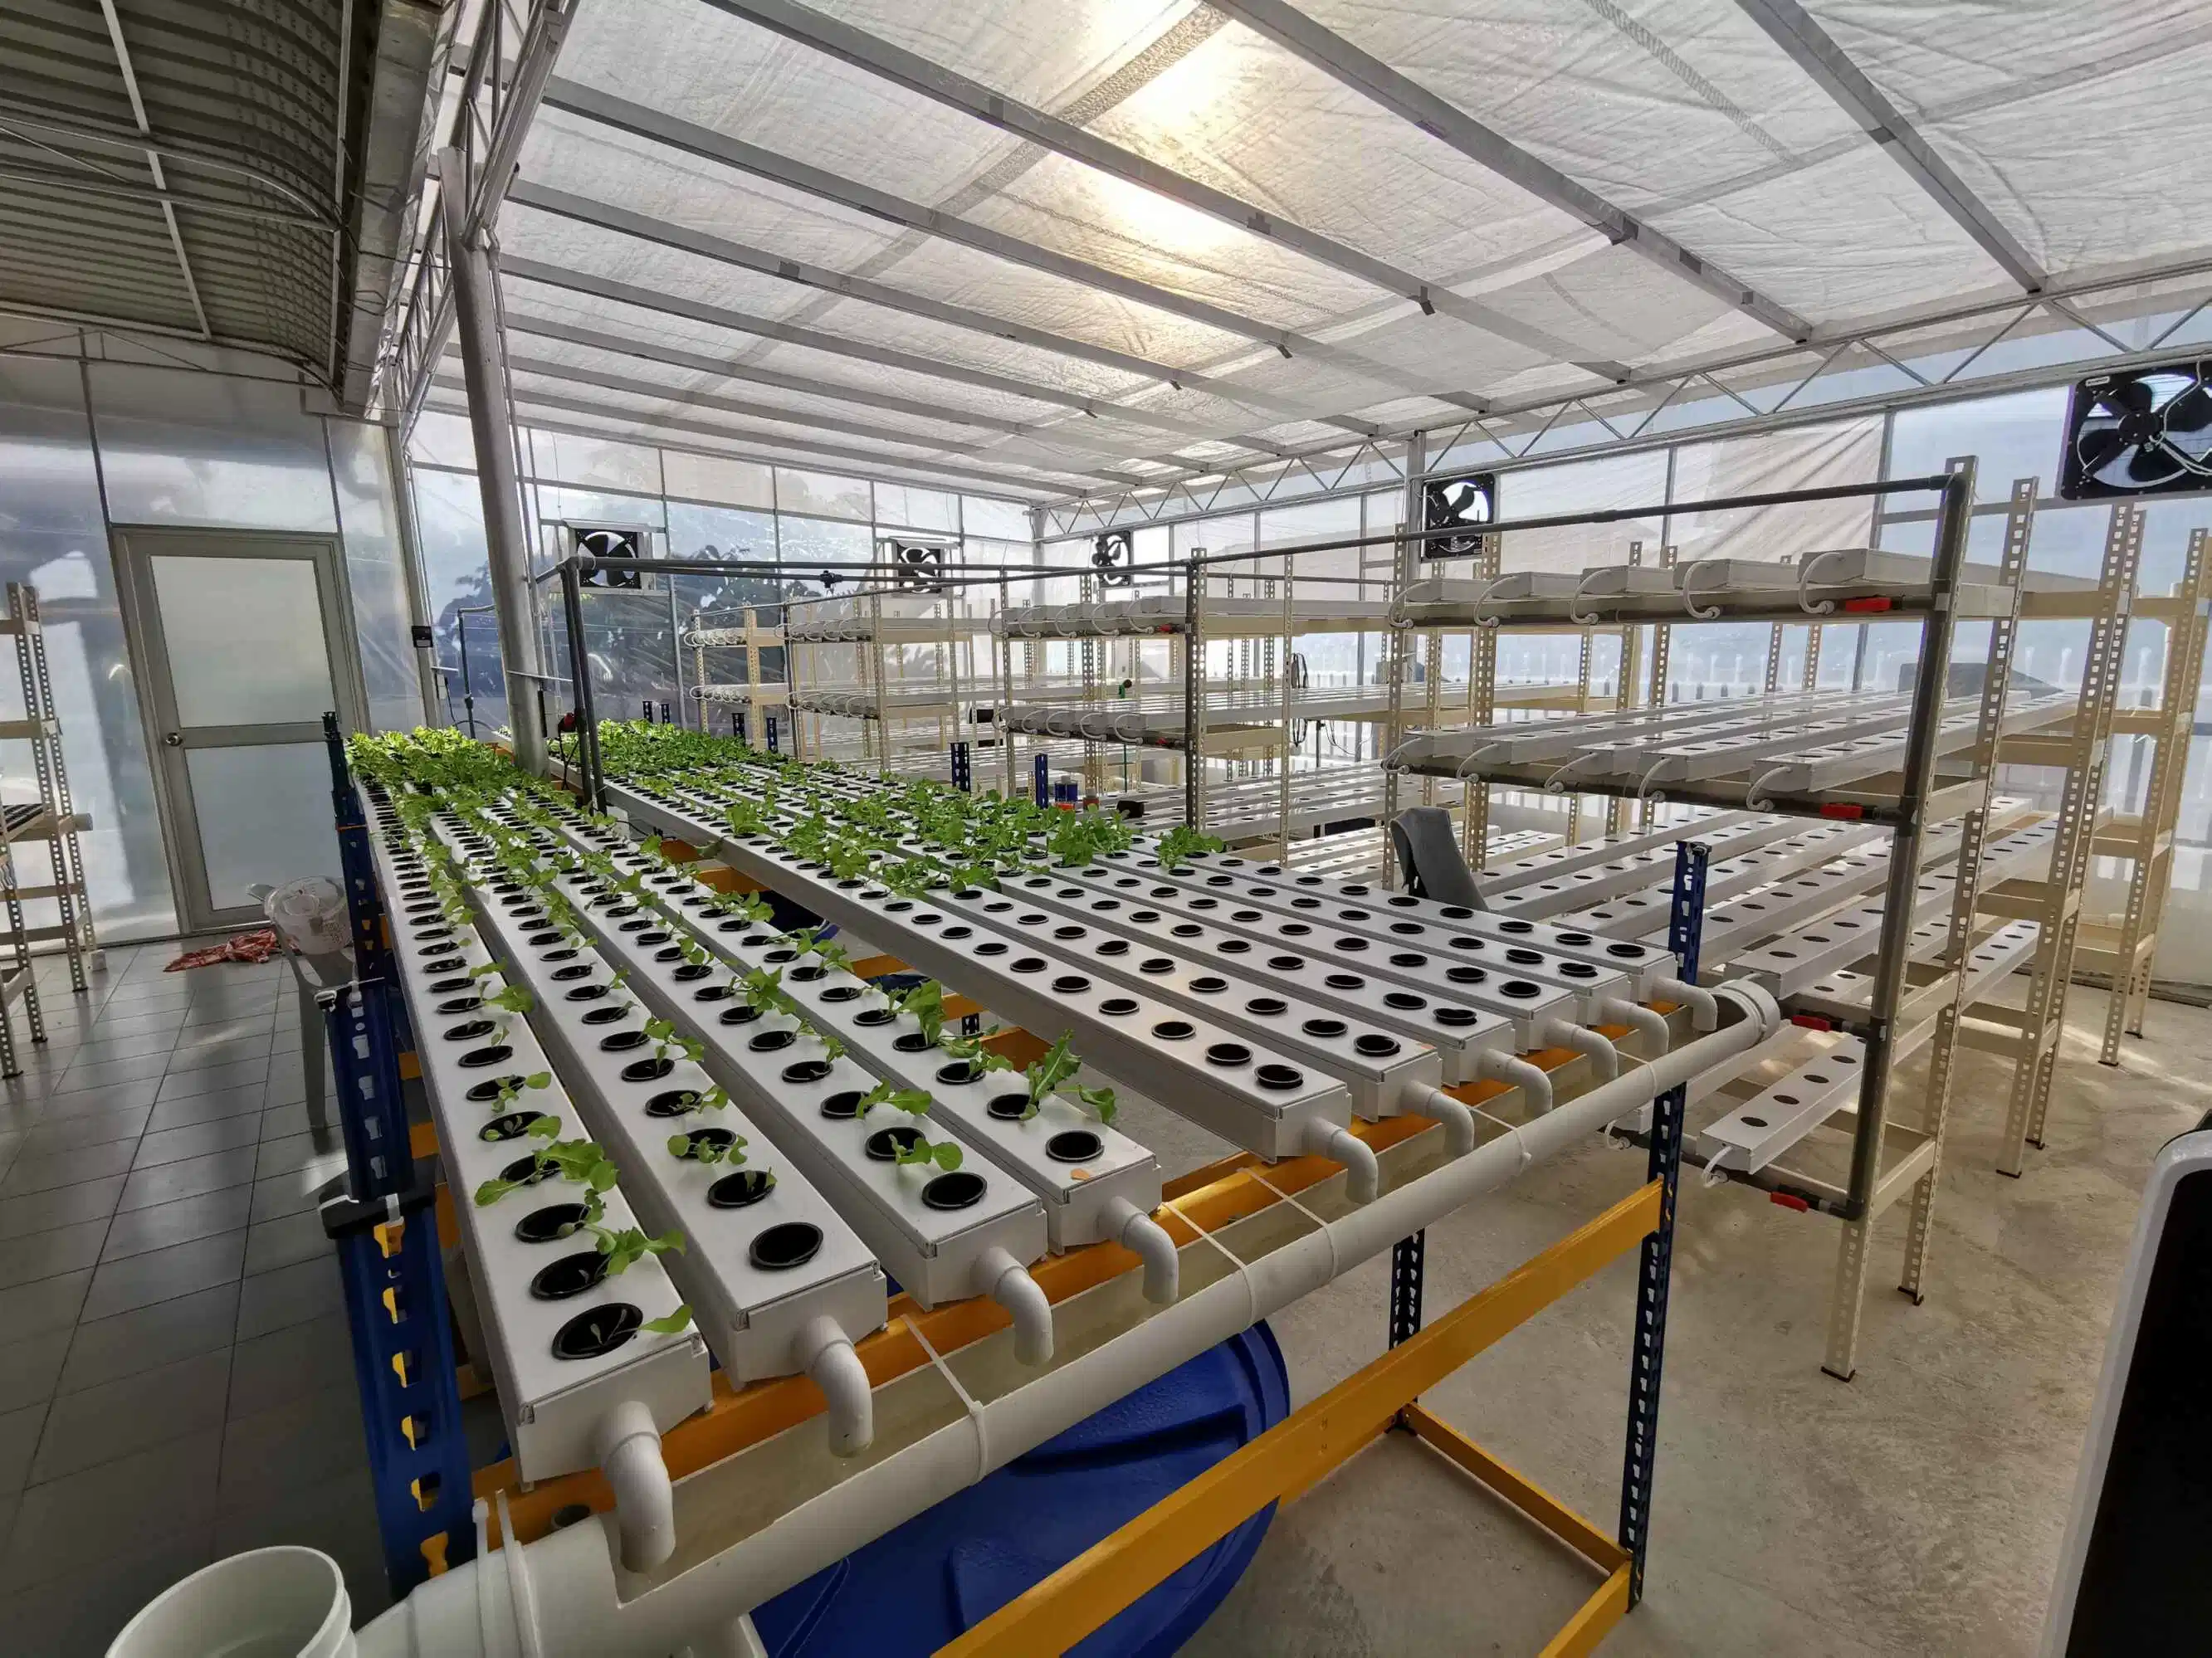 El cultivo de nutriente Nft canal alimentario fertilizante del tubo de PVC Hidroponía cada vez más el riego agrícola